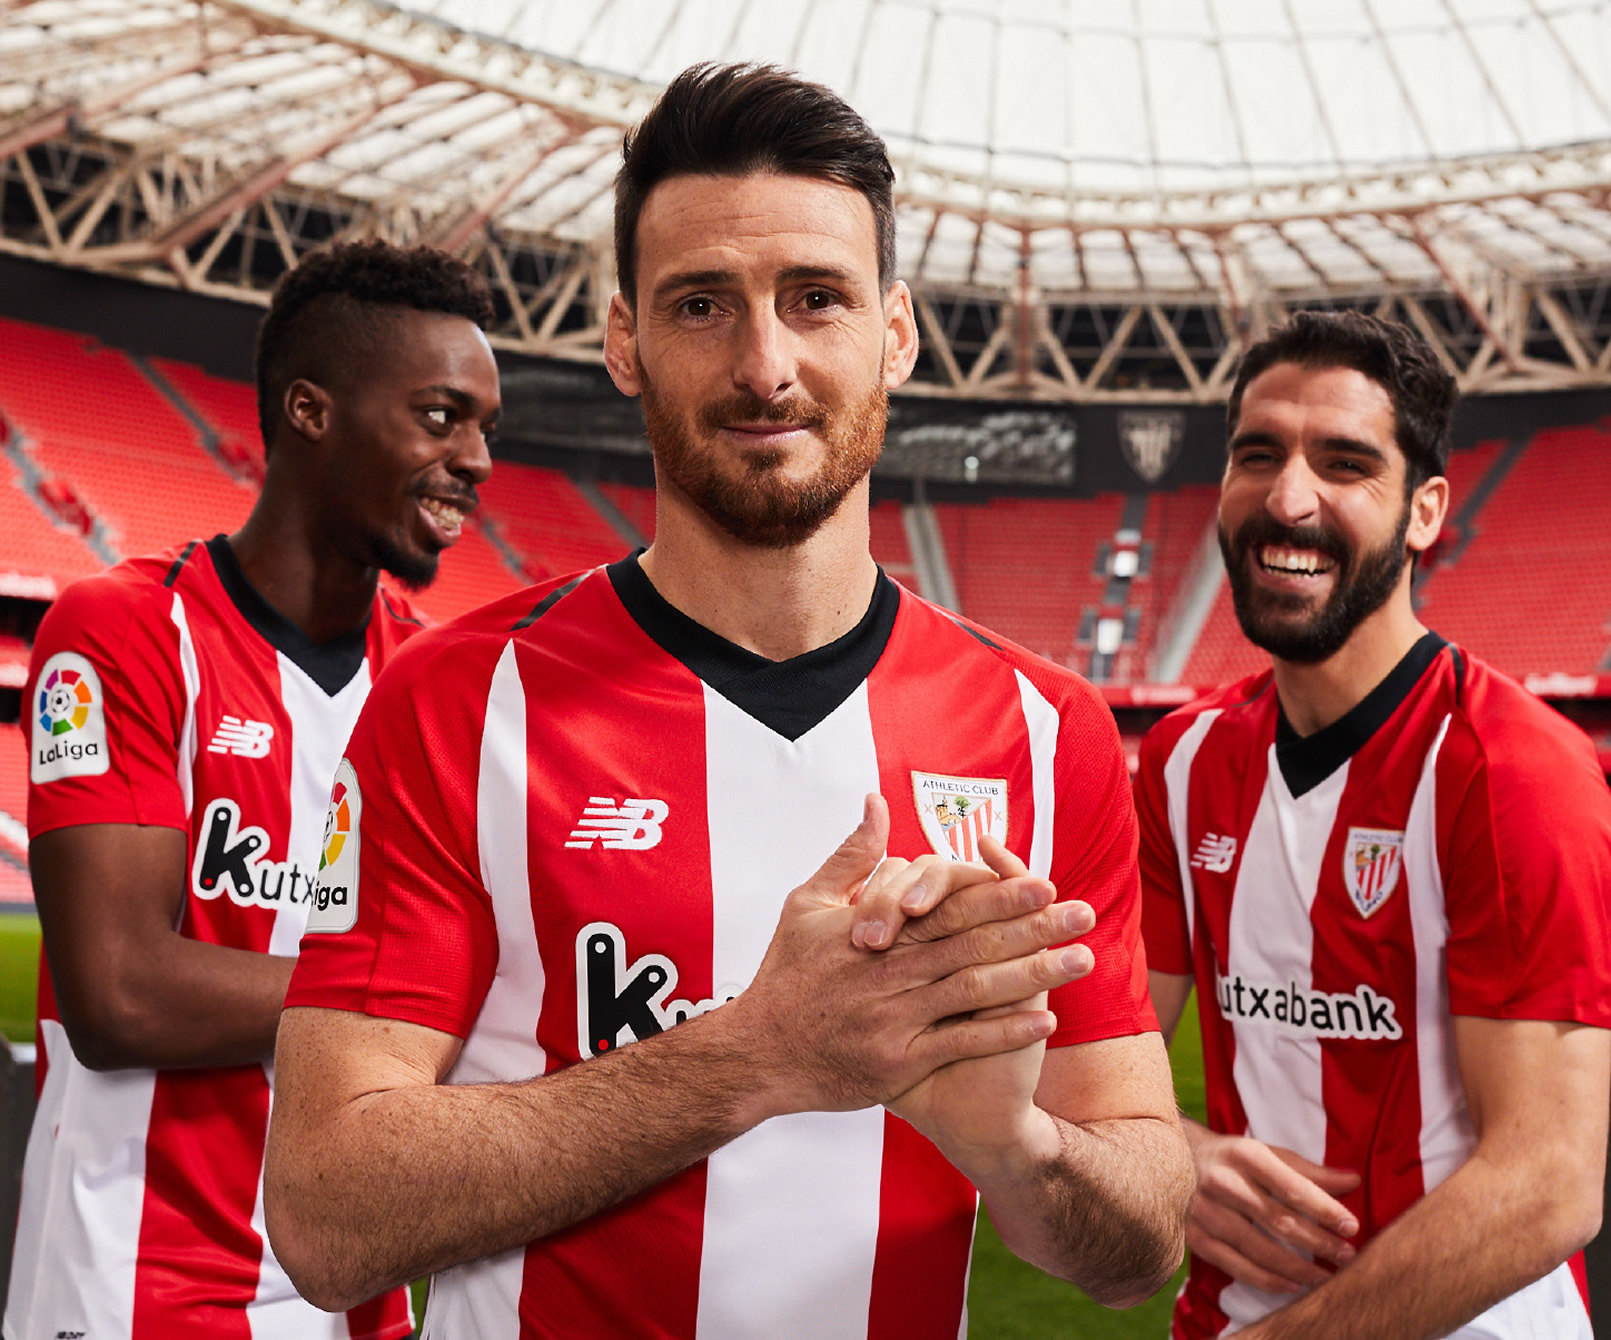 Agregar inteligencia puñetazo Camiseta New Balance del Athletic Bilbao 2018/19